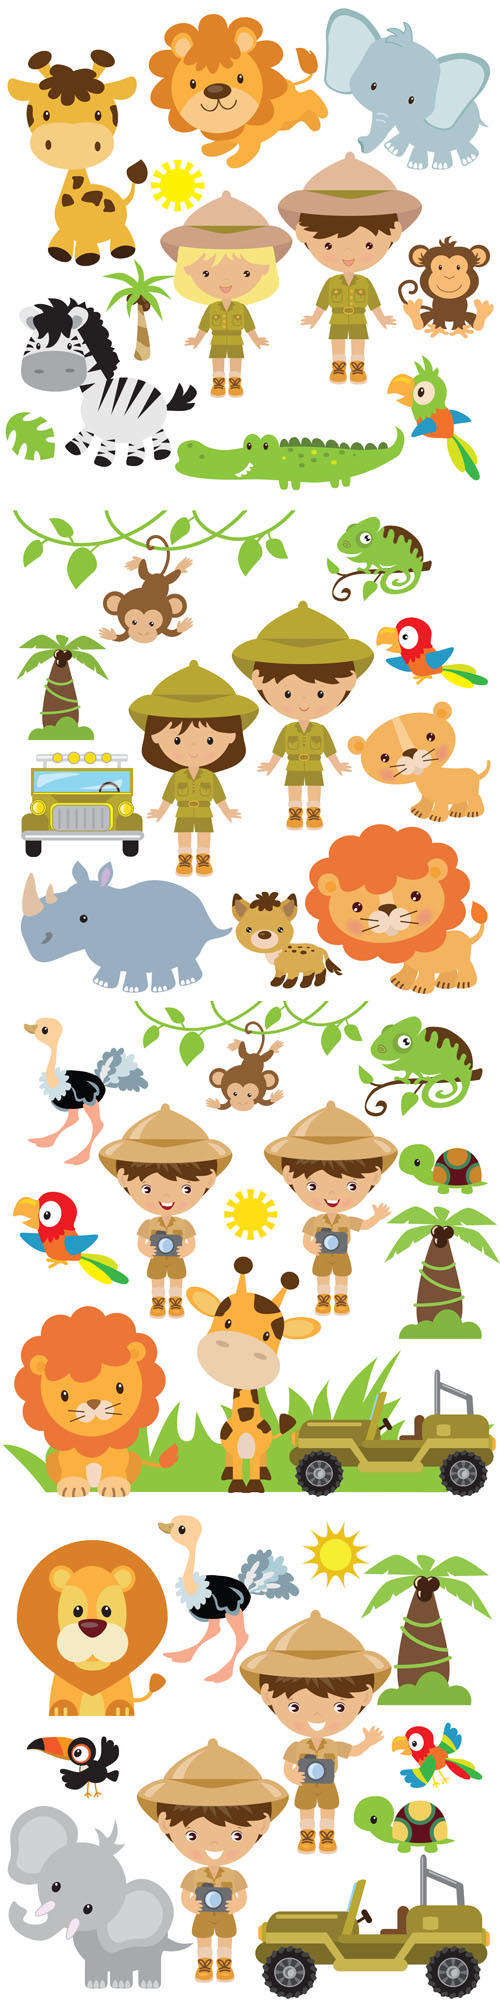 Safari illustration - Vectors